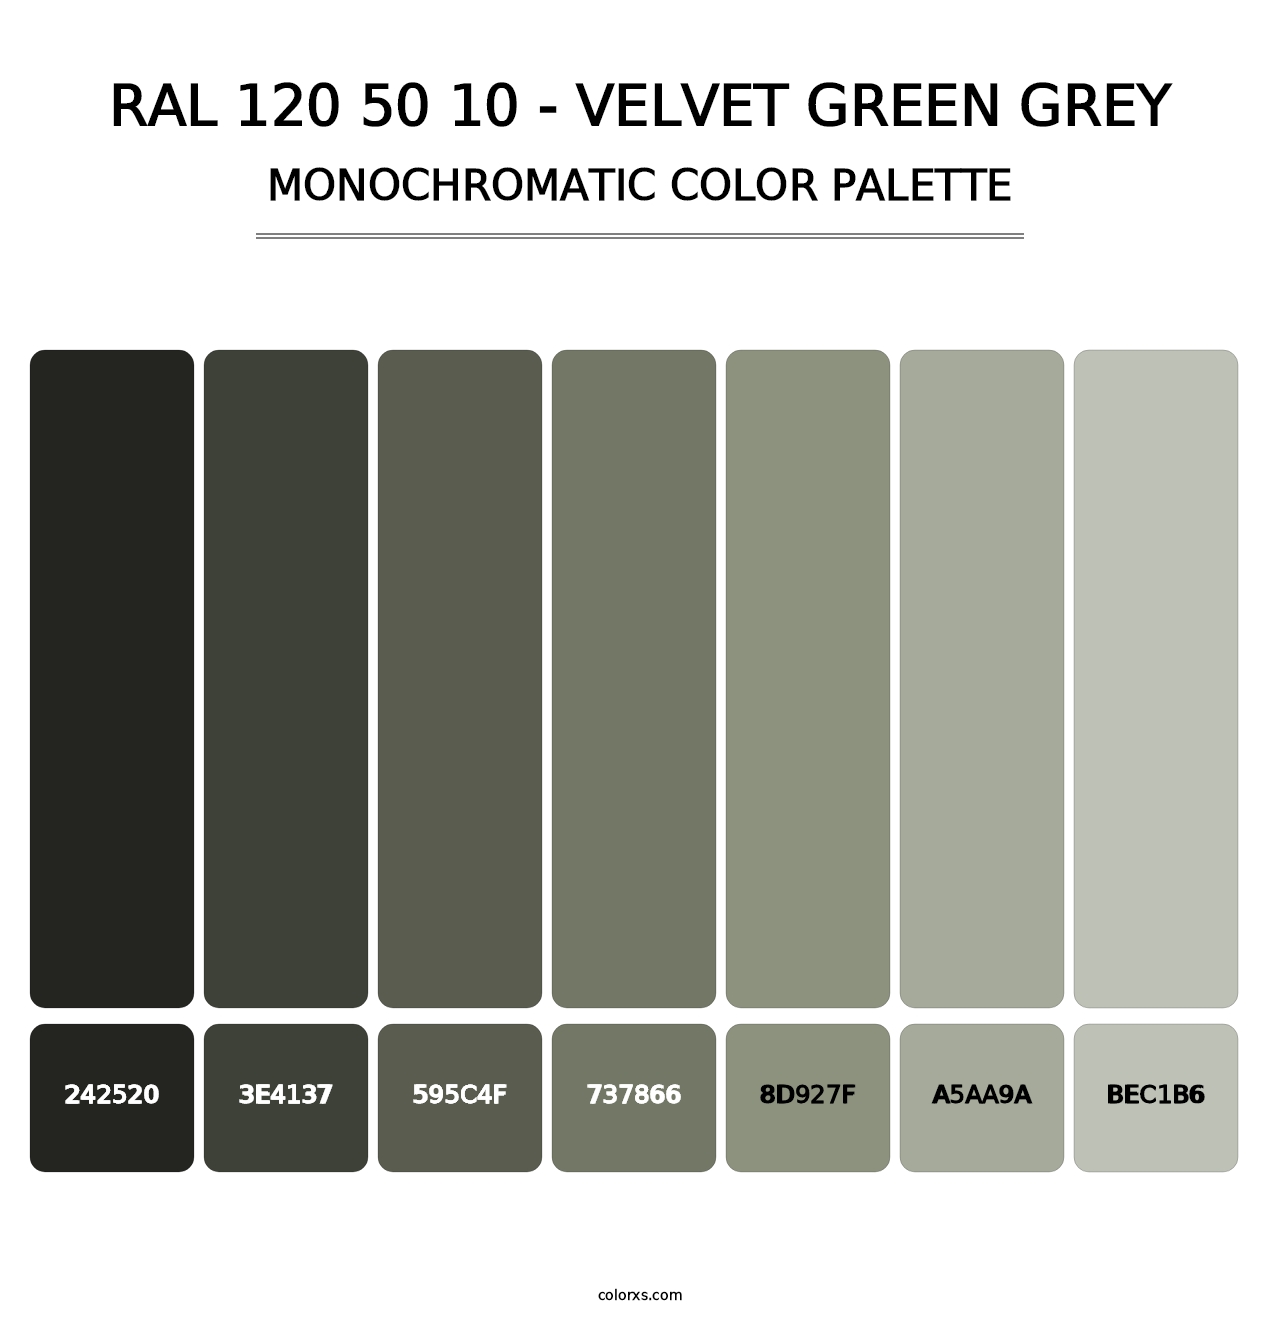 RAL 120 50 10 - Velvet Green Grey - Monochromatic Color Palette